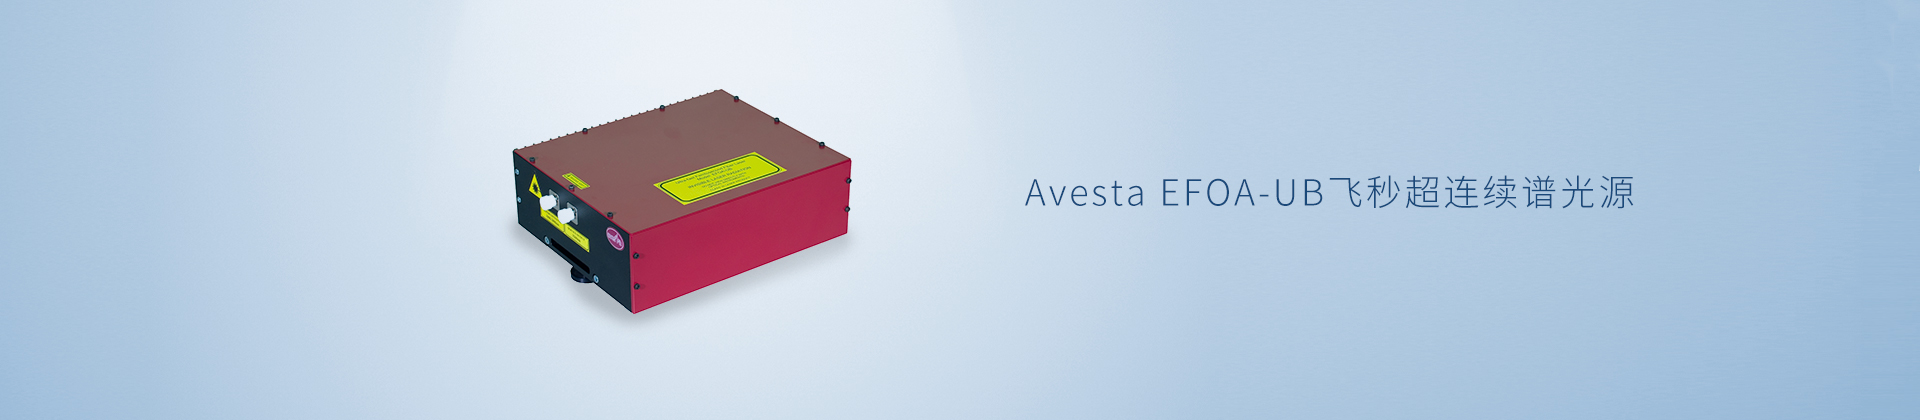 Avesta EFOA-UB飞秒超连续谱光源